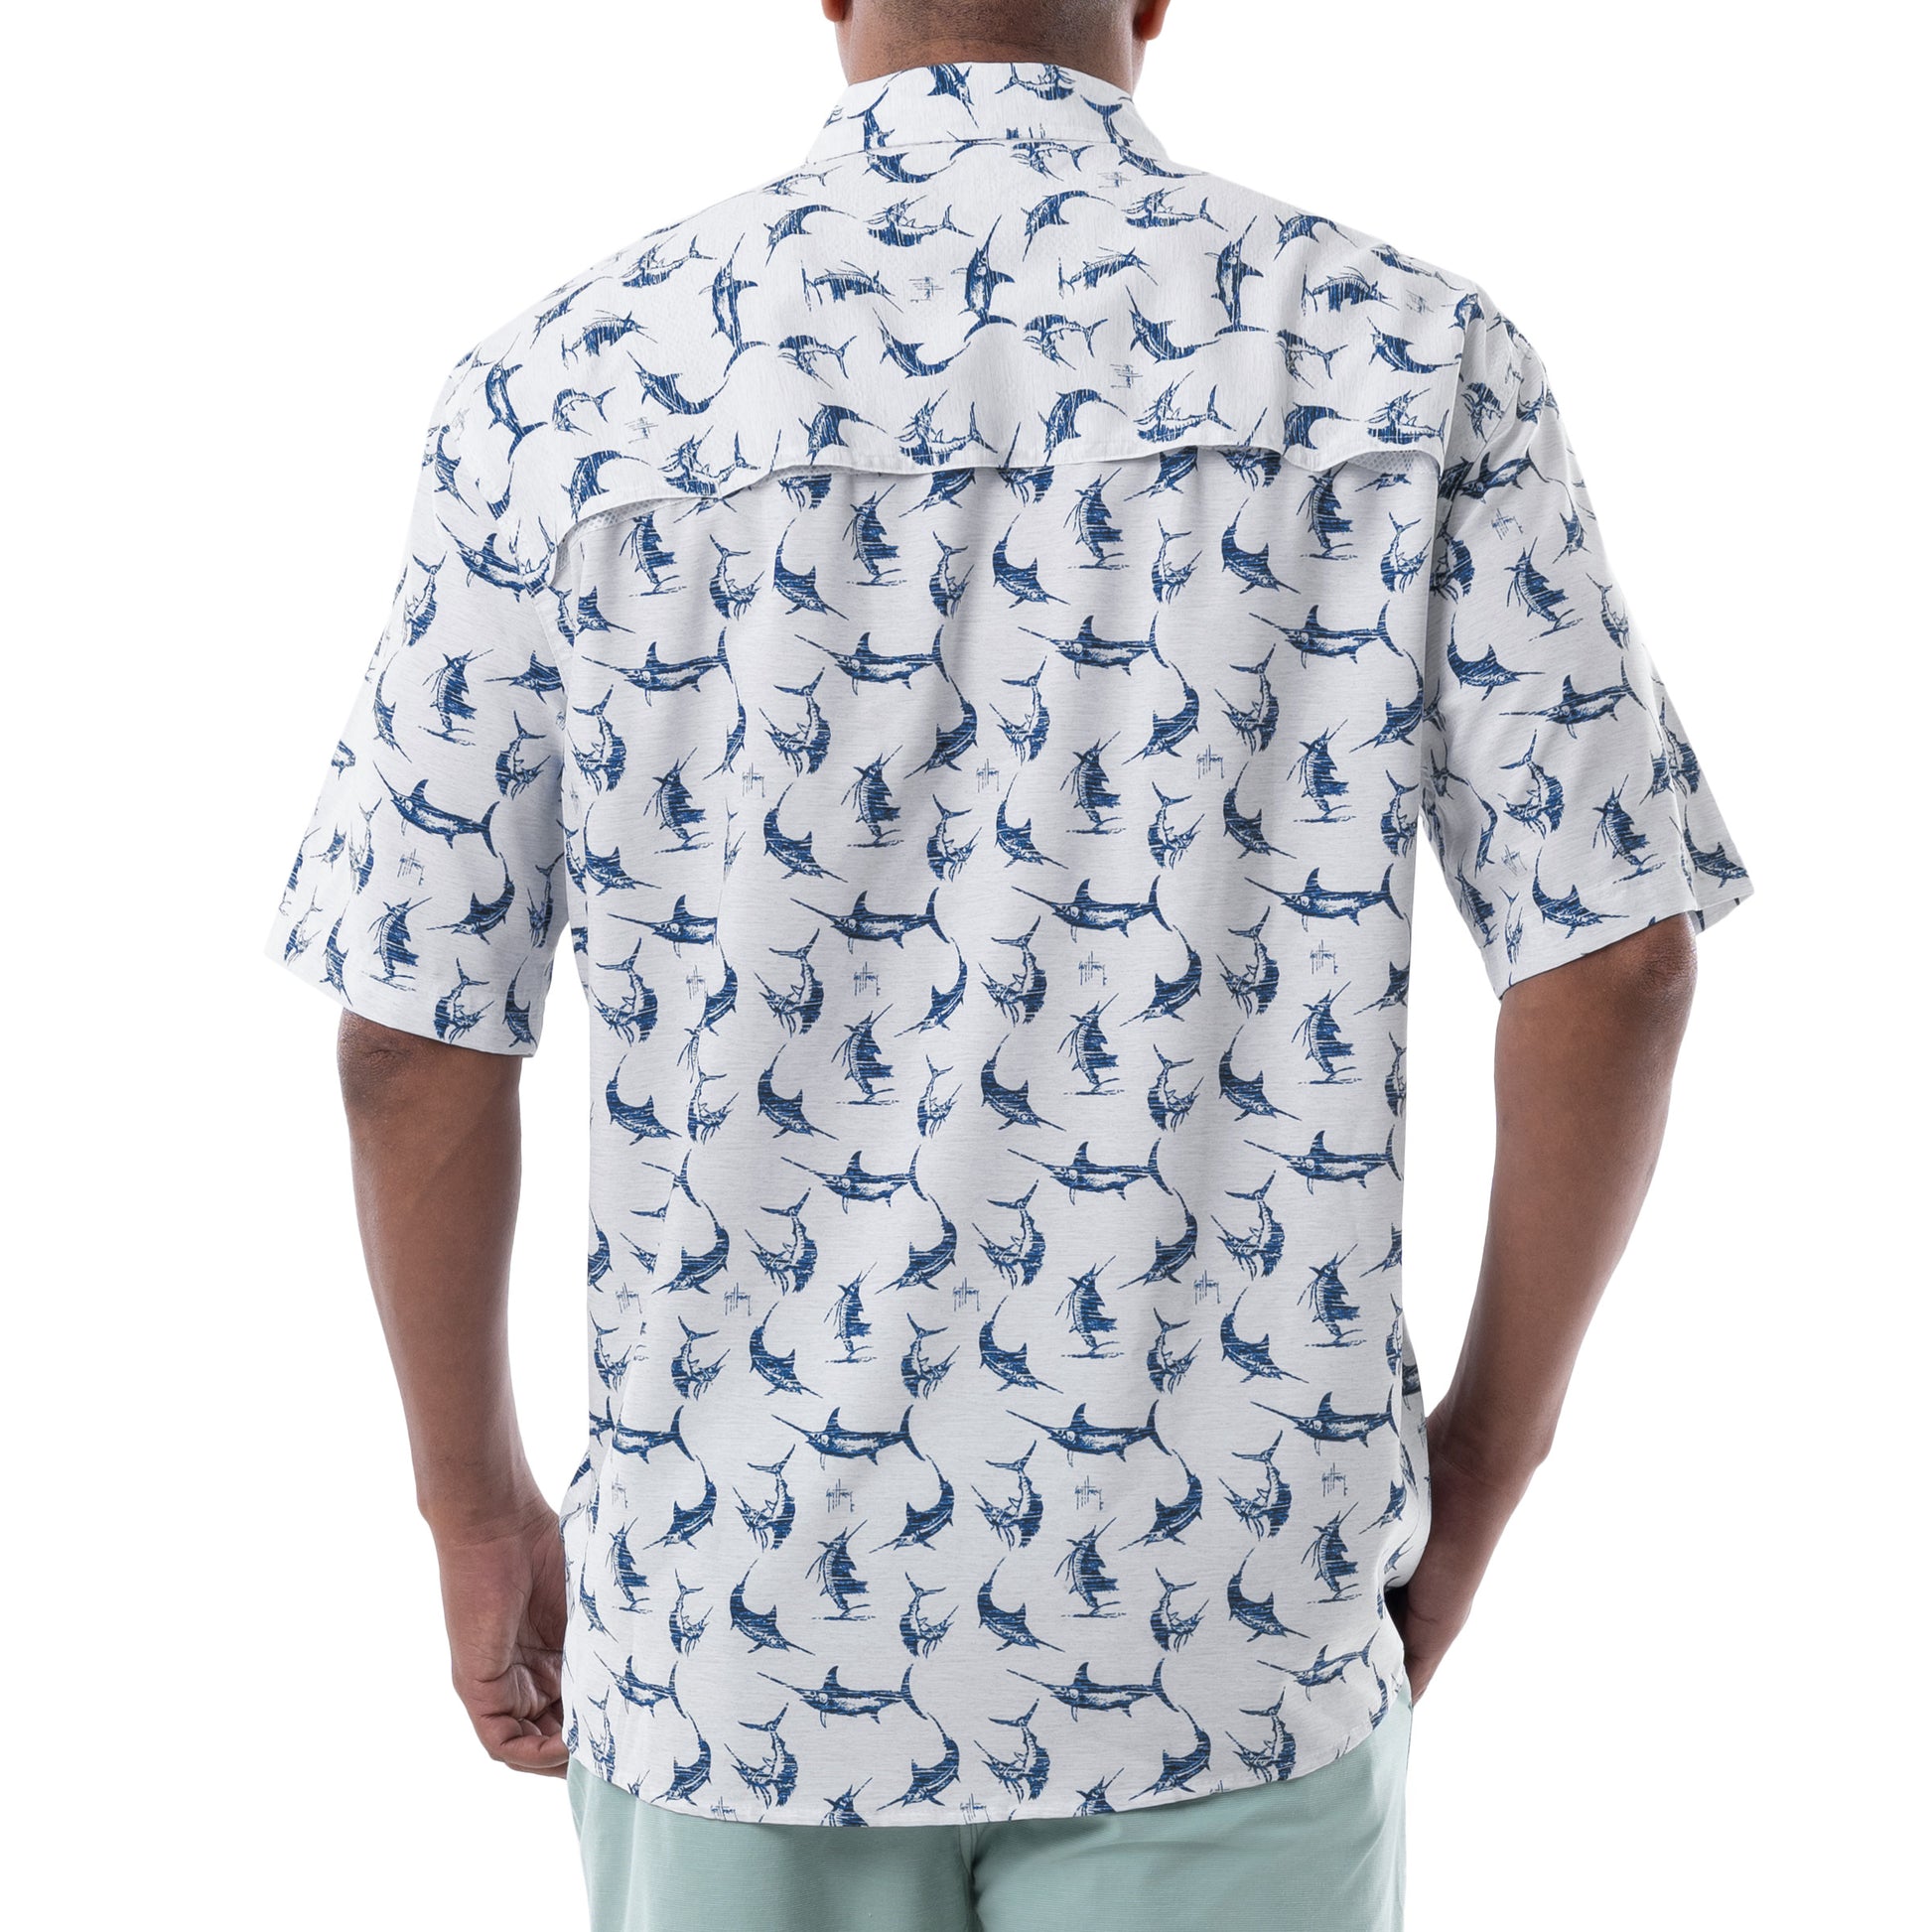 Men's Retro Billfish Short Sleeve Fishing Shirt View 14